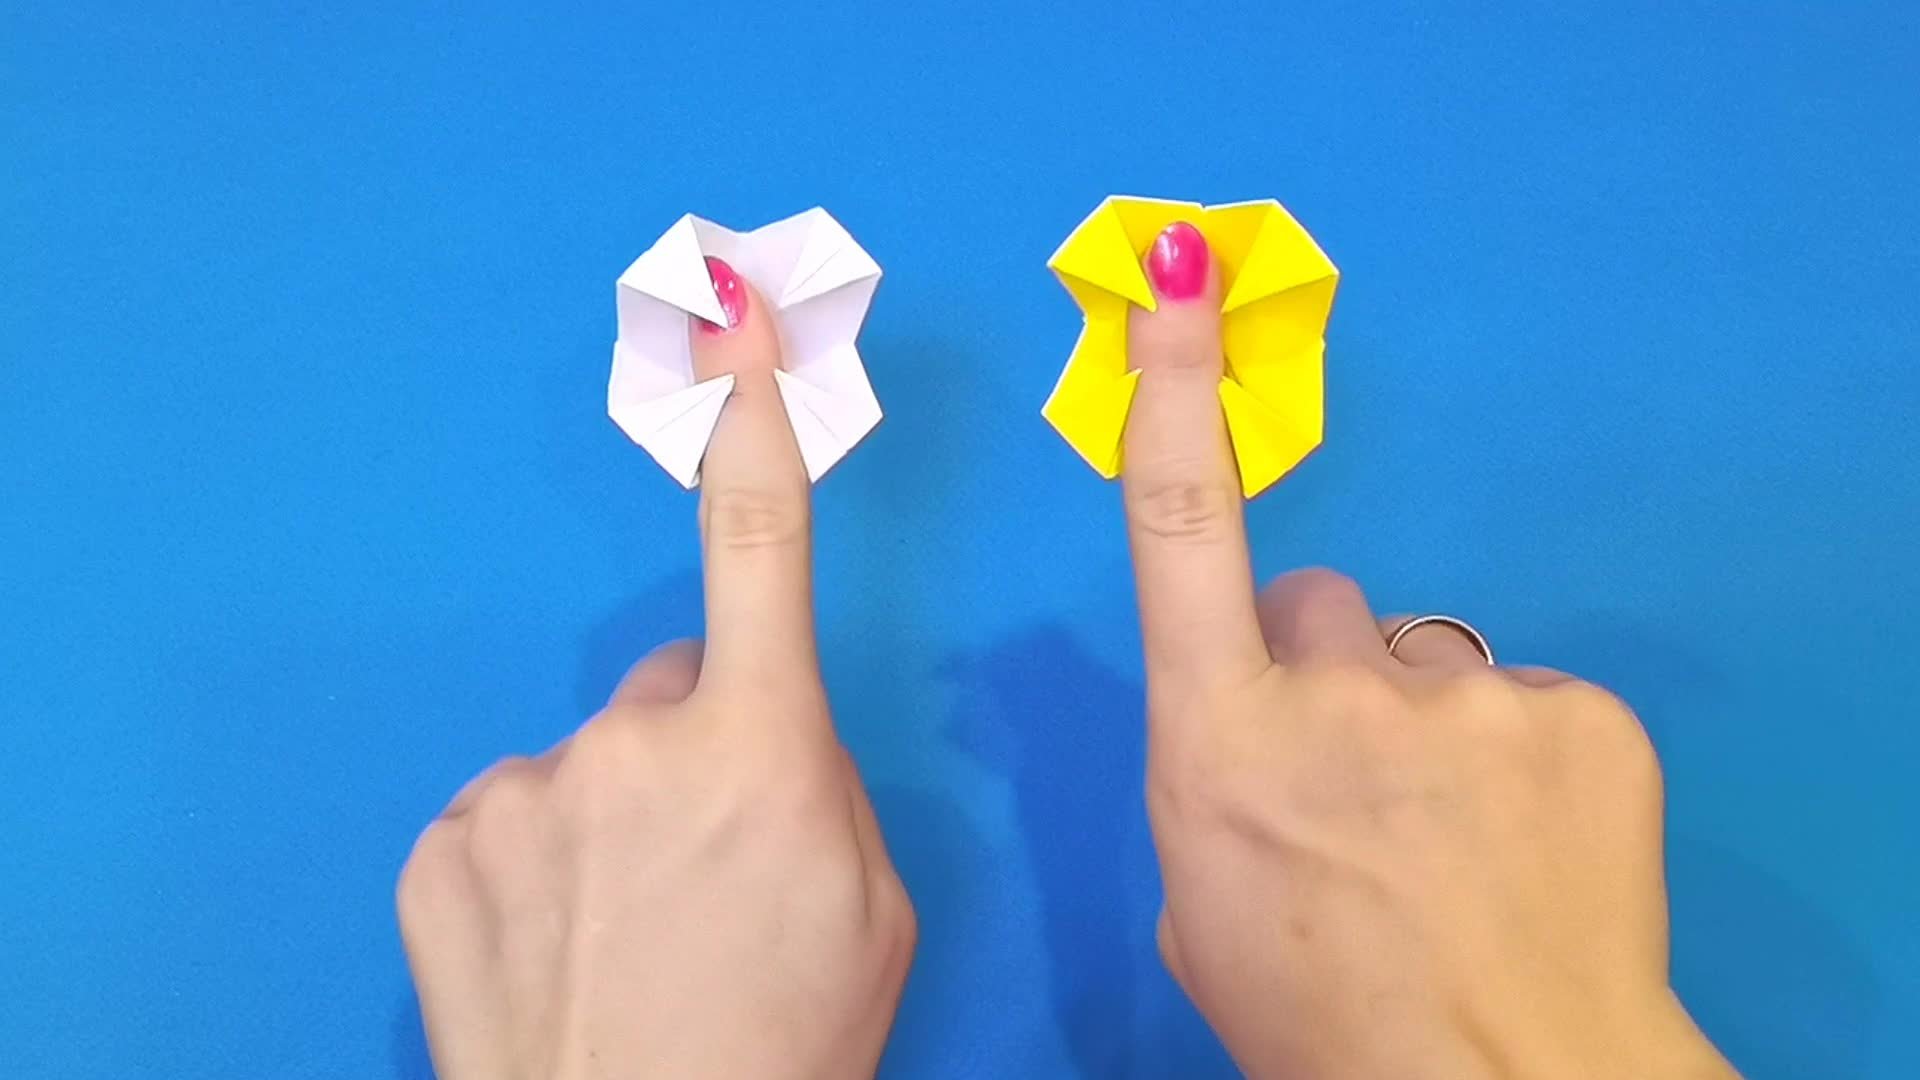 Антистресс из бумаги а4. Оригами. Оригами игрушка антистресс. А̊н̊т̊и̊с̊т̊р̊е̊с̊ы̊ и̊з̊ б̊у̊м̊а̊г̊и̊. Антистресс из бумаги для детей.